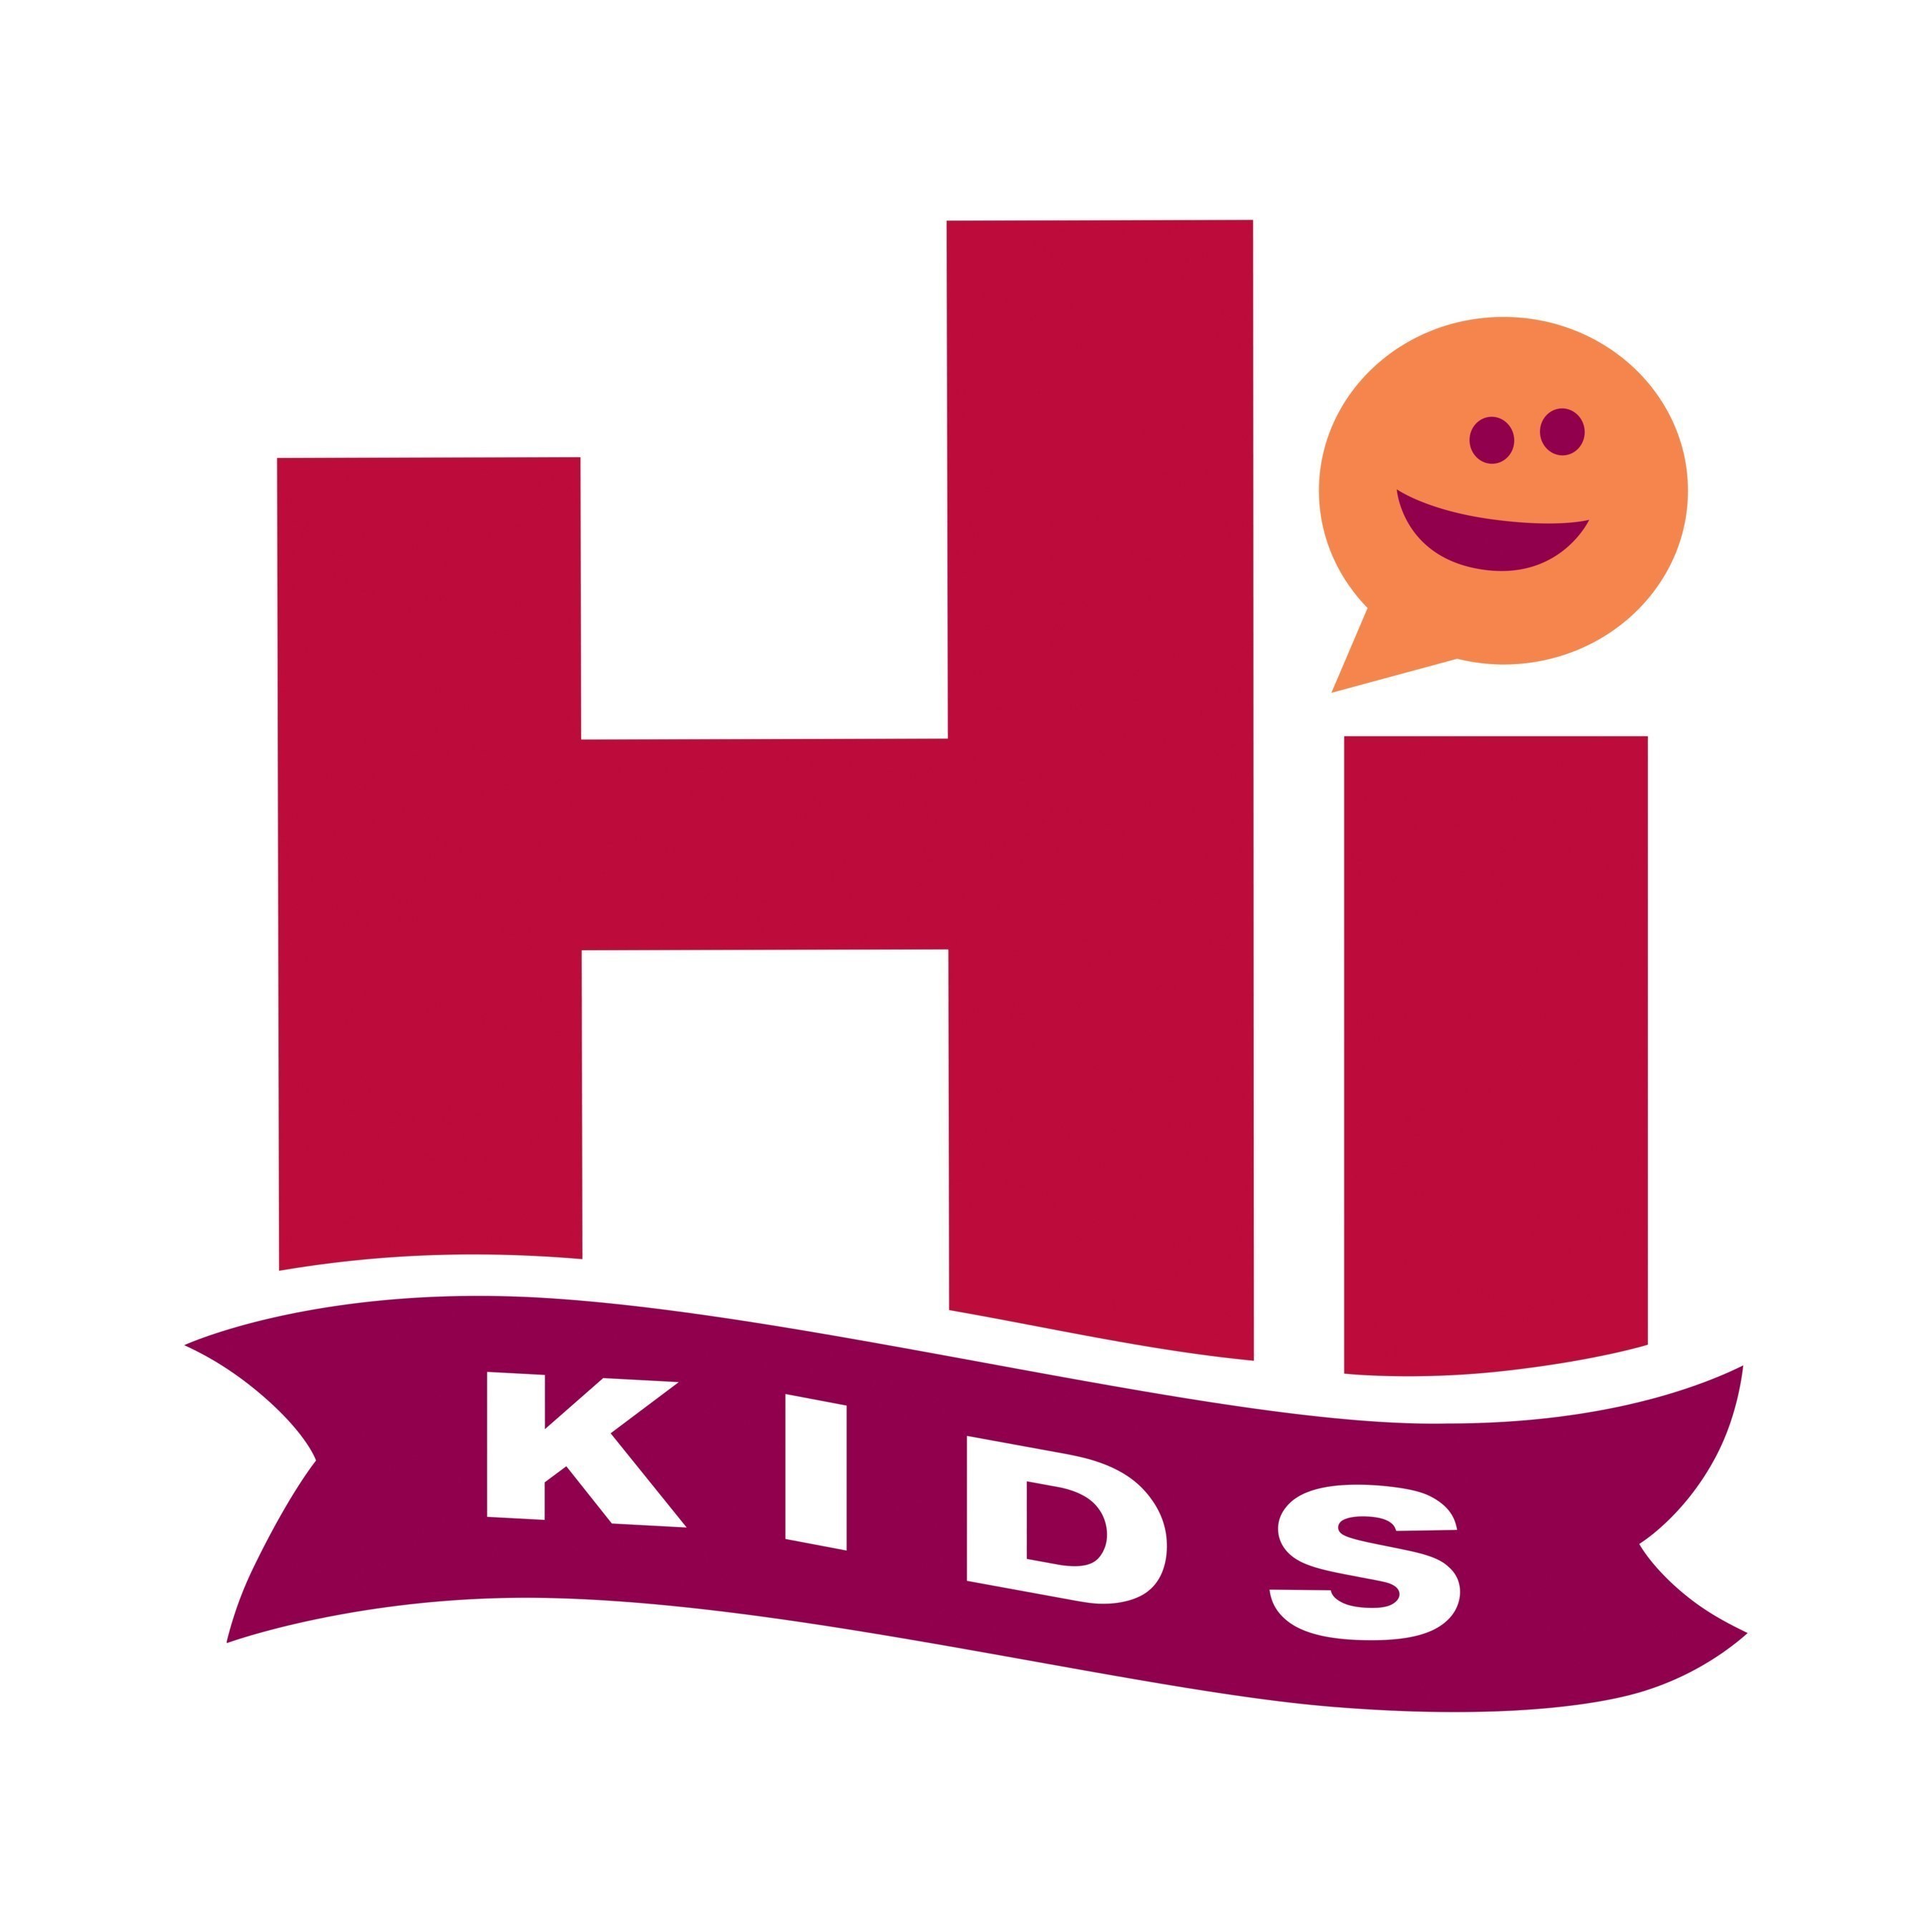 Hi Kids logo